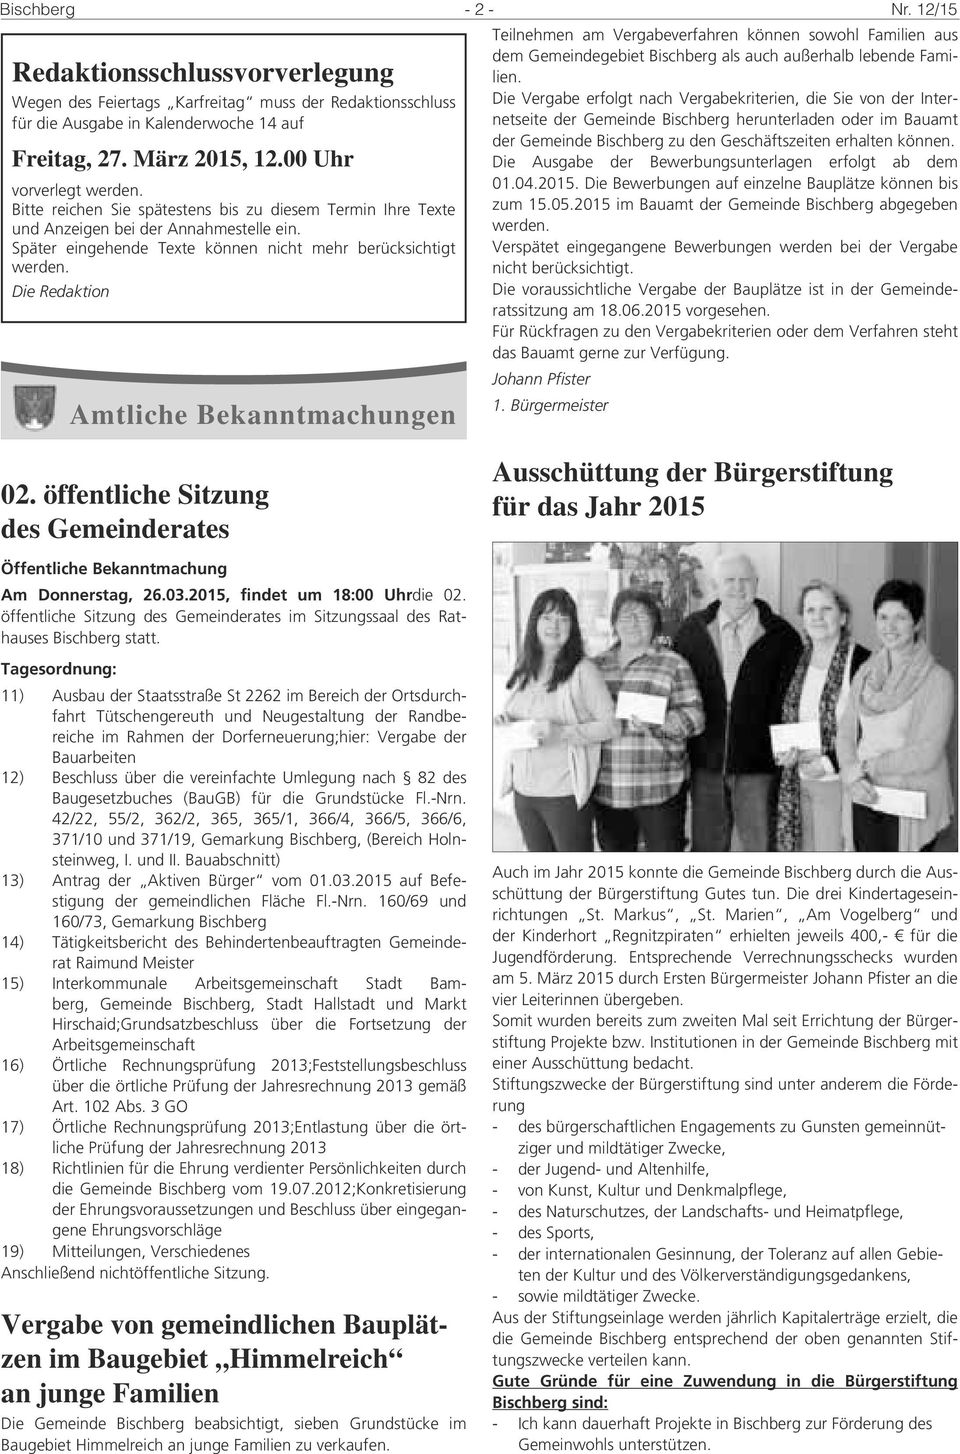 mitteilungsblatt der gemeinde bischberg pdf kostenfreier download